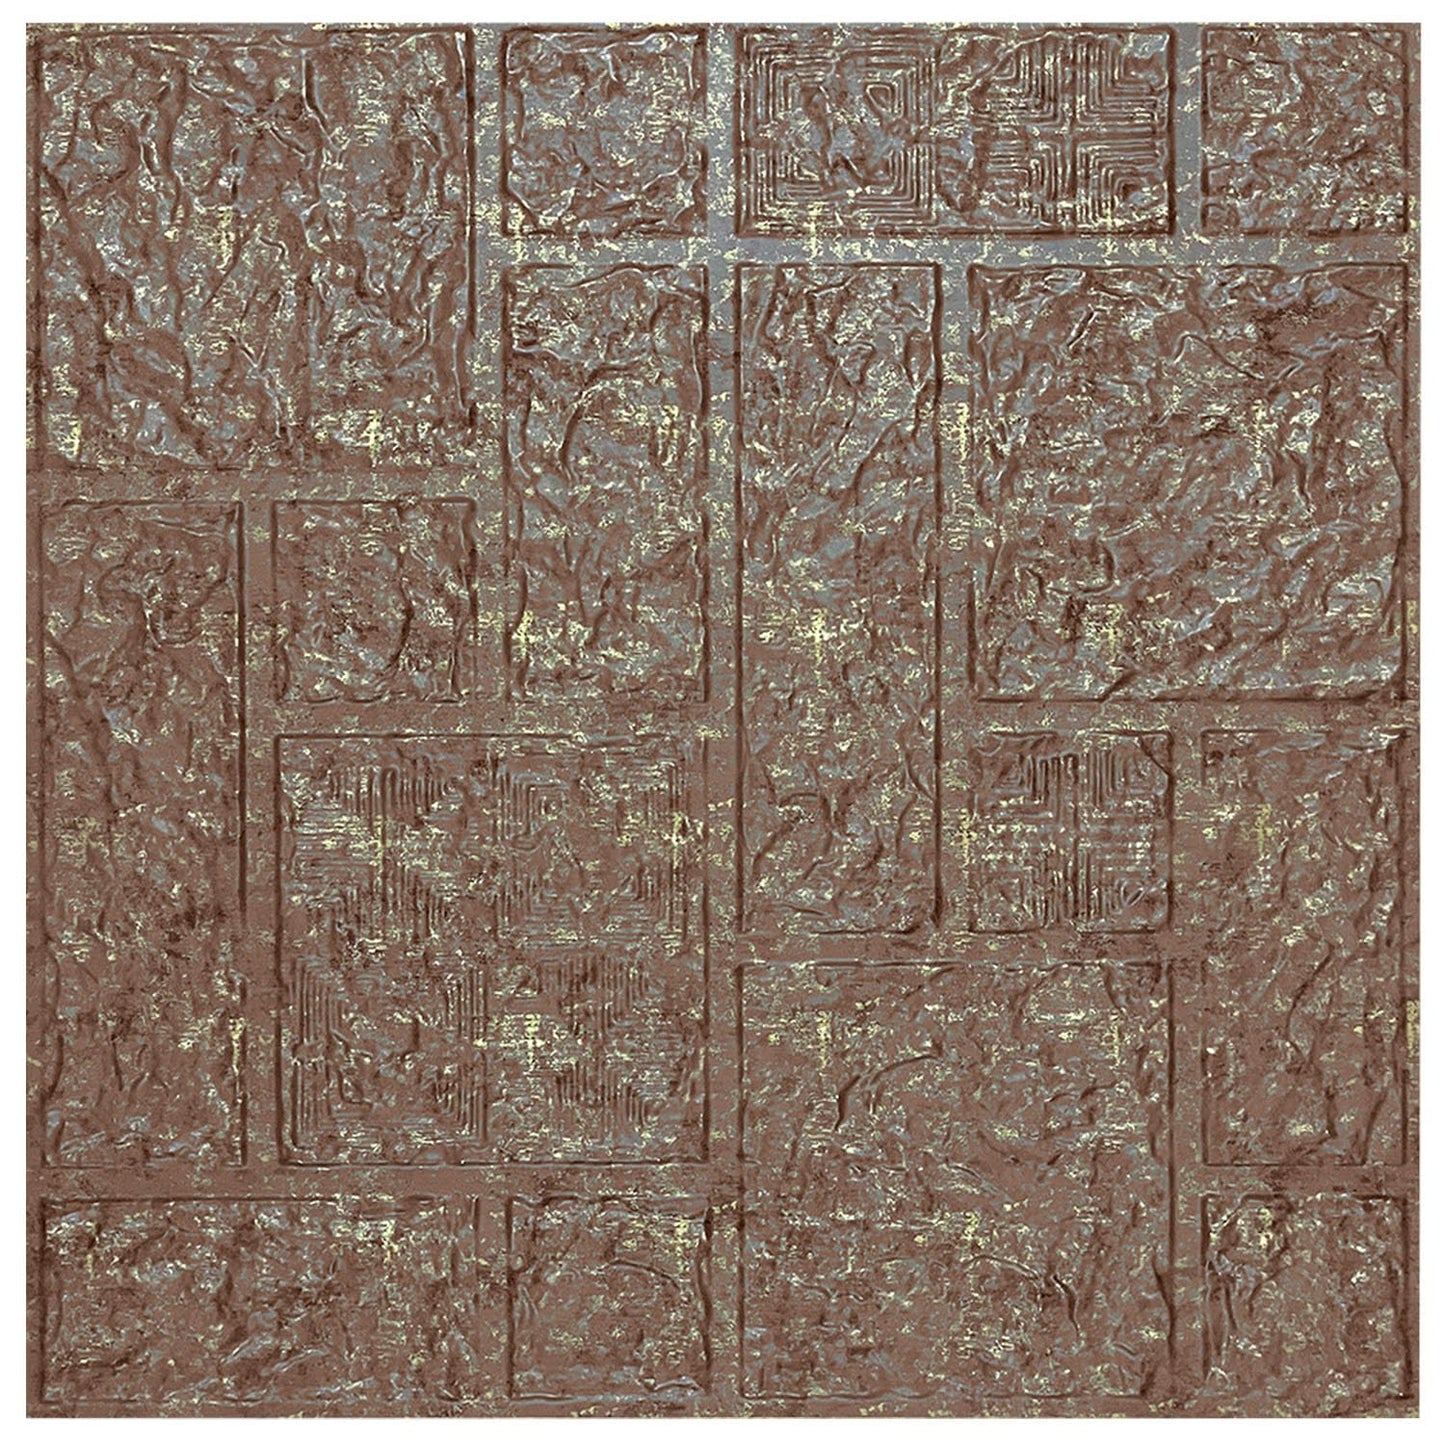 Kayra Decor 3D Self Adhesive Wall Panel - Brown Color Abstract Design - 50 X 50 cm